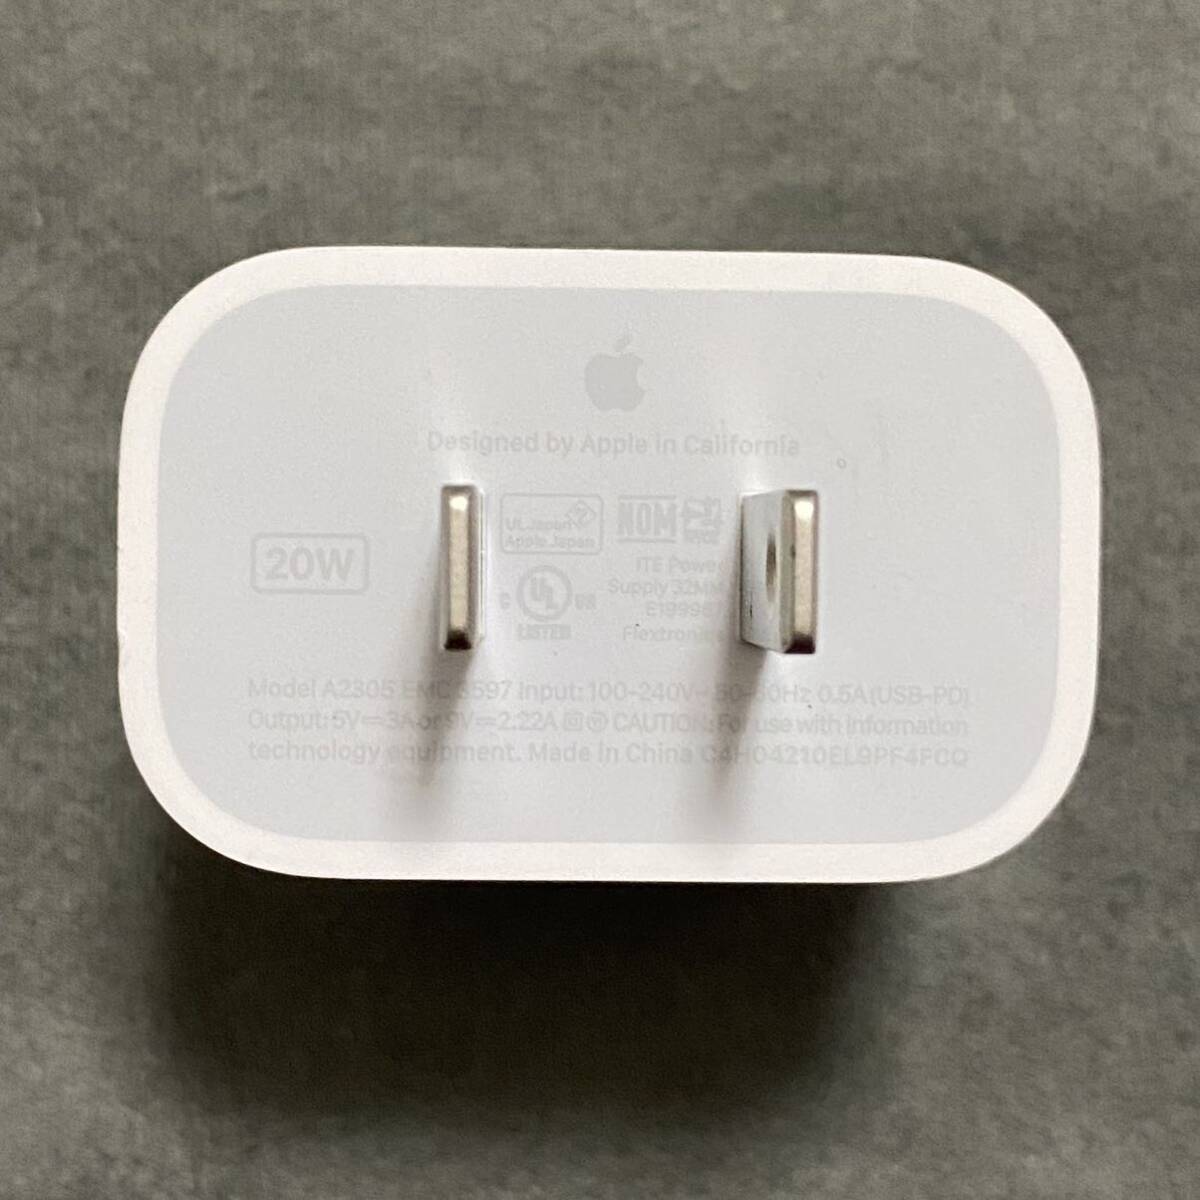 アップル 純正 Apple USB-C 電源アダプタ A2305 20W PD ACアダプタ 充電器 iPhone USB-C電源アダプタ MHJA3AM/A 送料無料 送料込